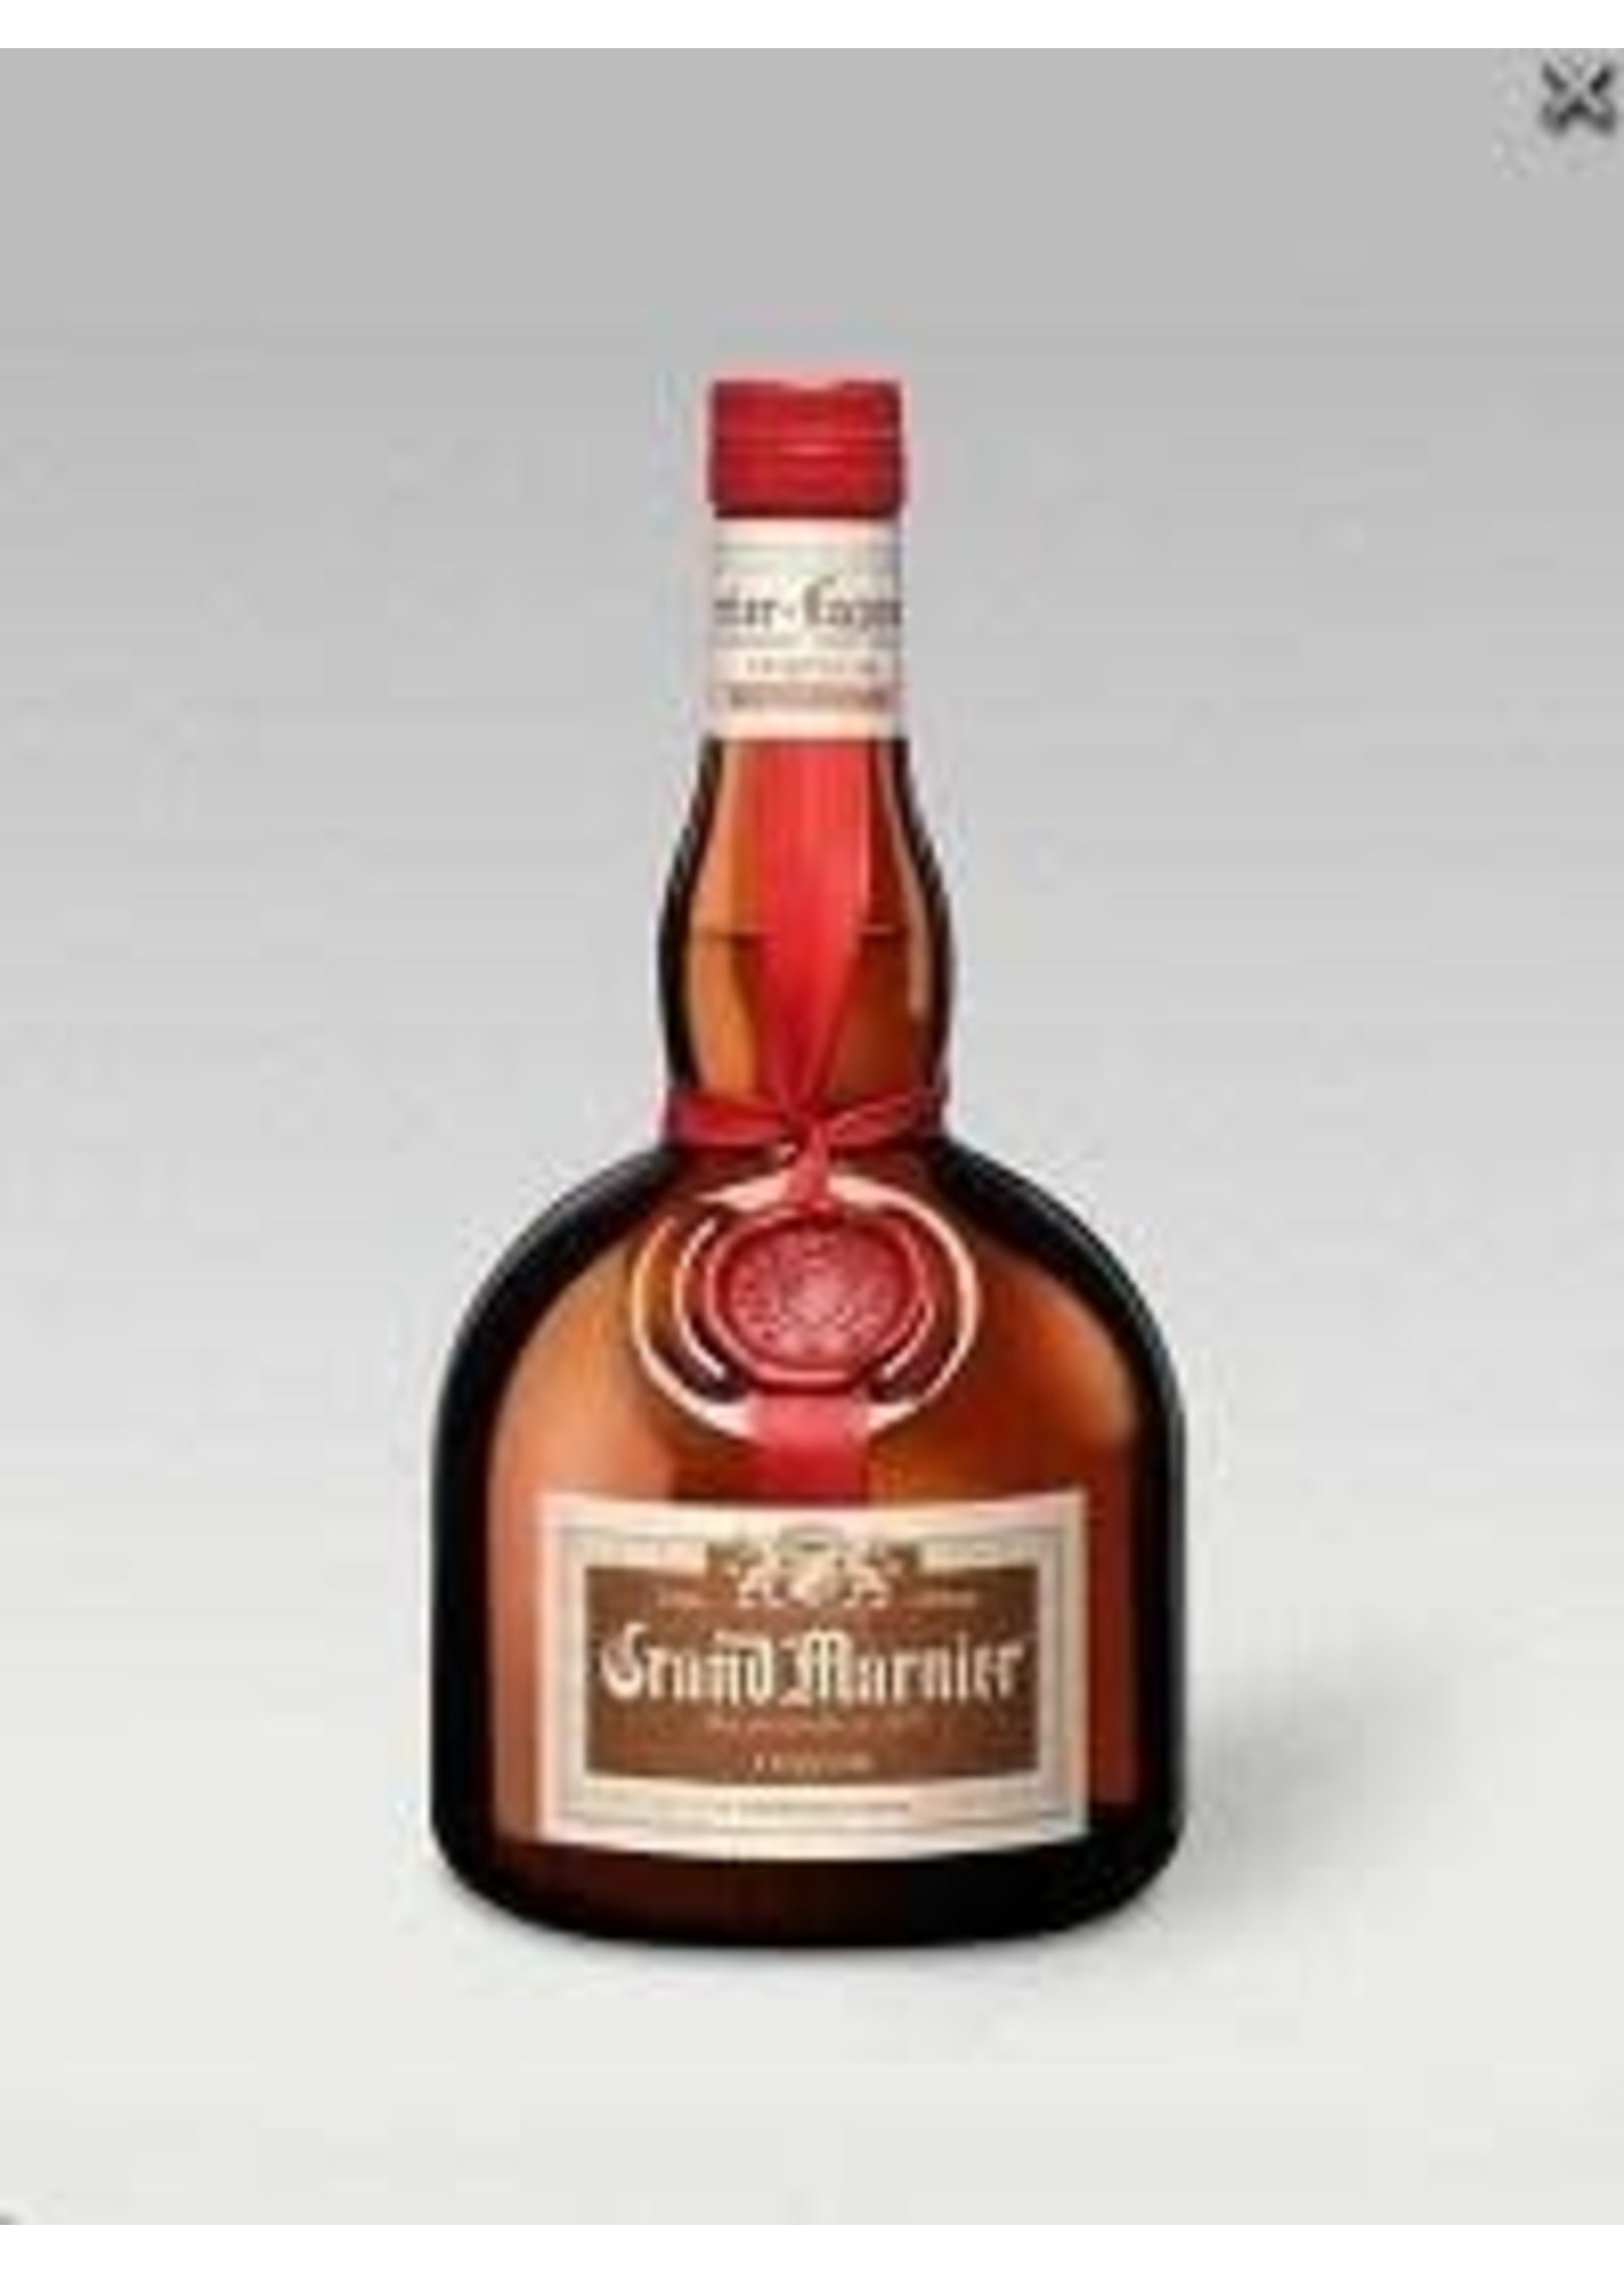 Grand Marnier Grand Marnier / Liqueur